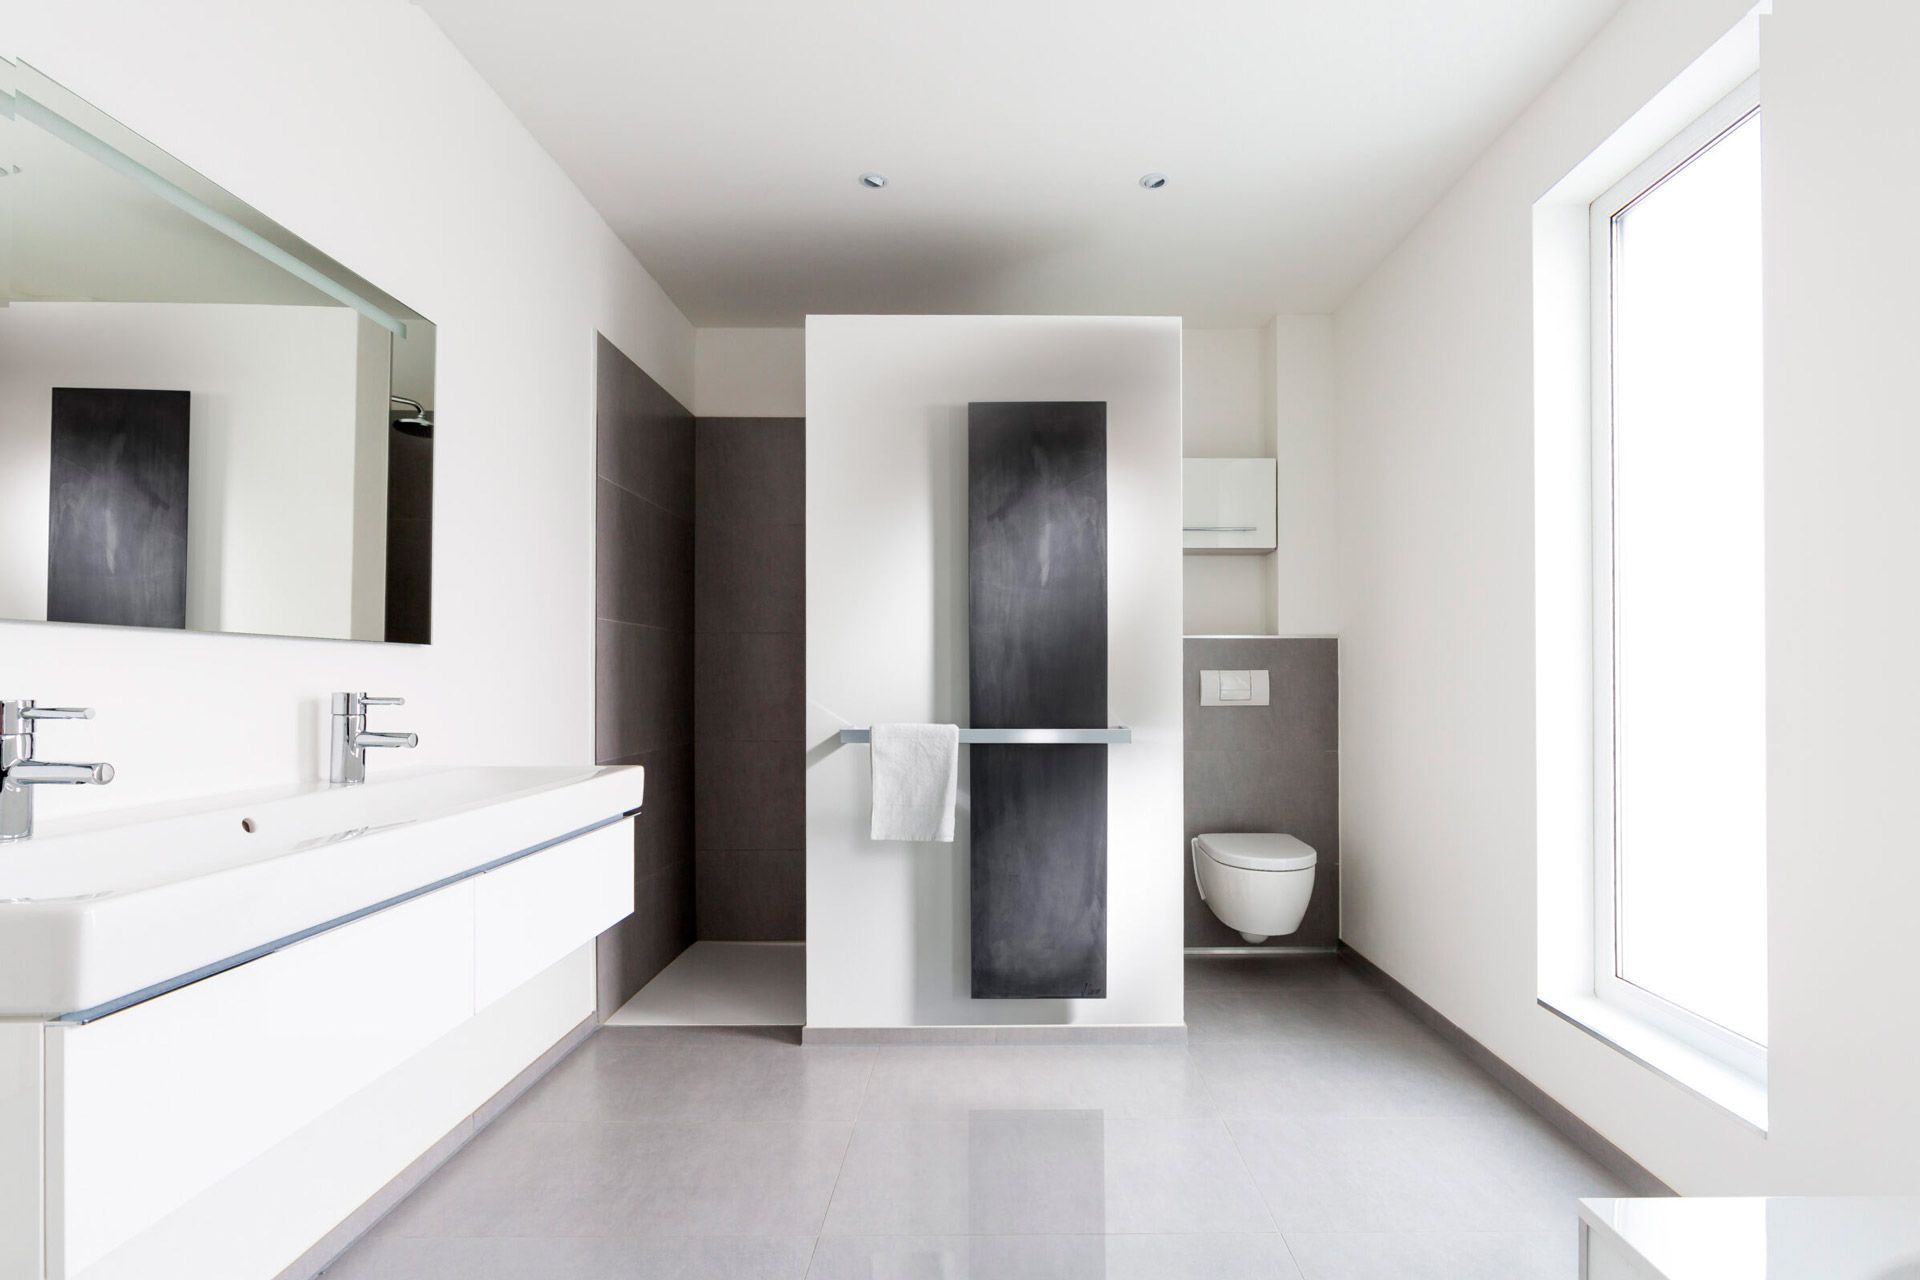 Sèche-serviettes contemporain dans une salle d'eau au design épuré